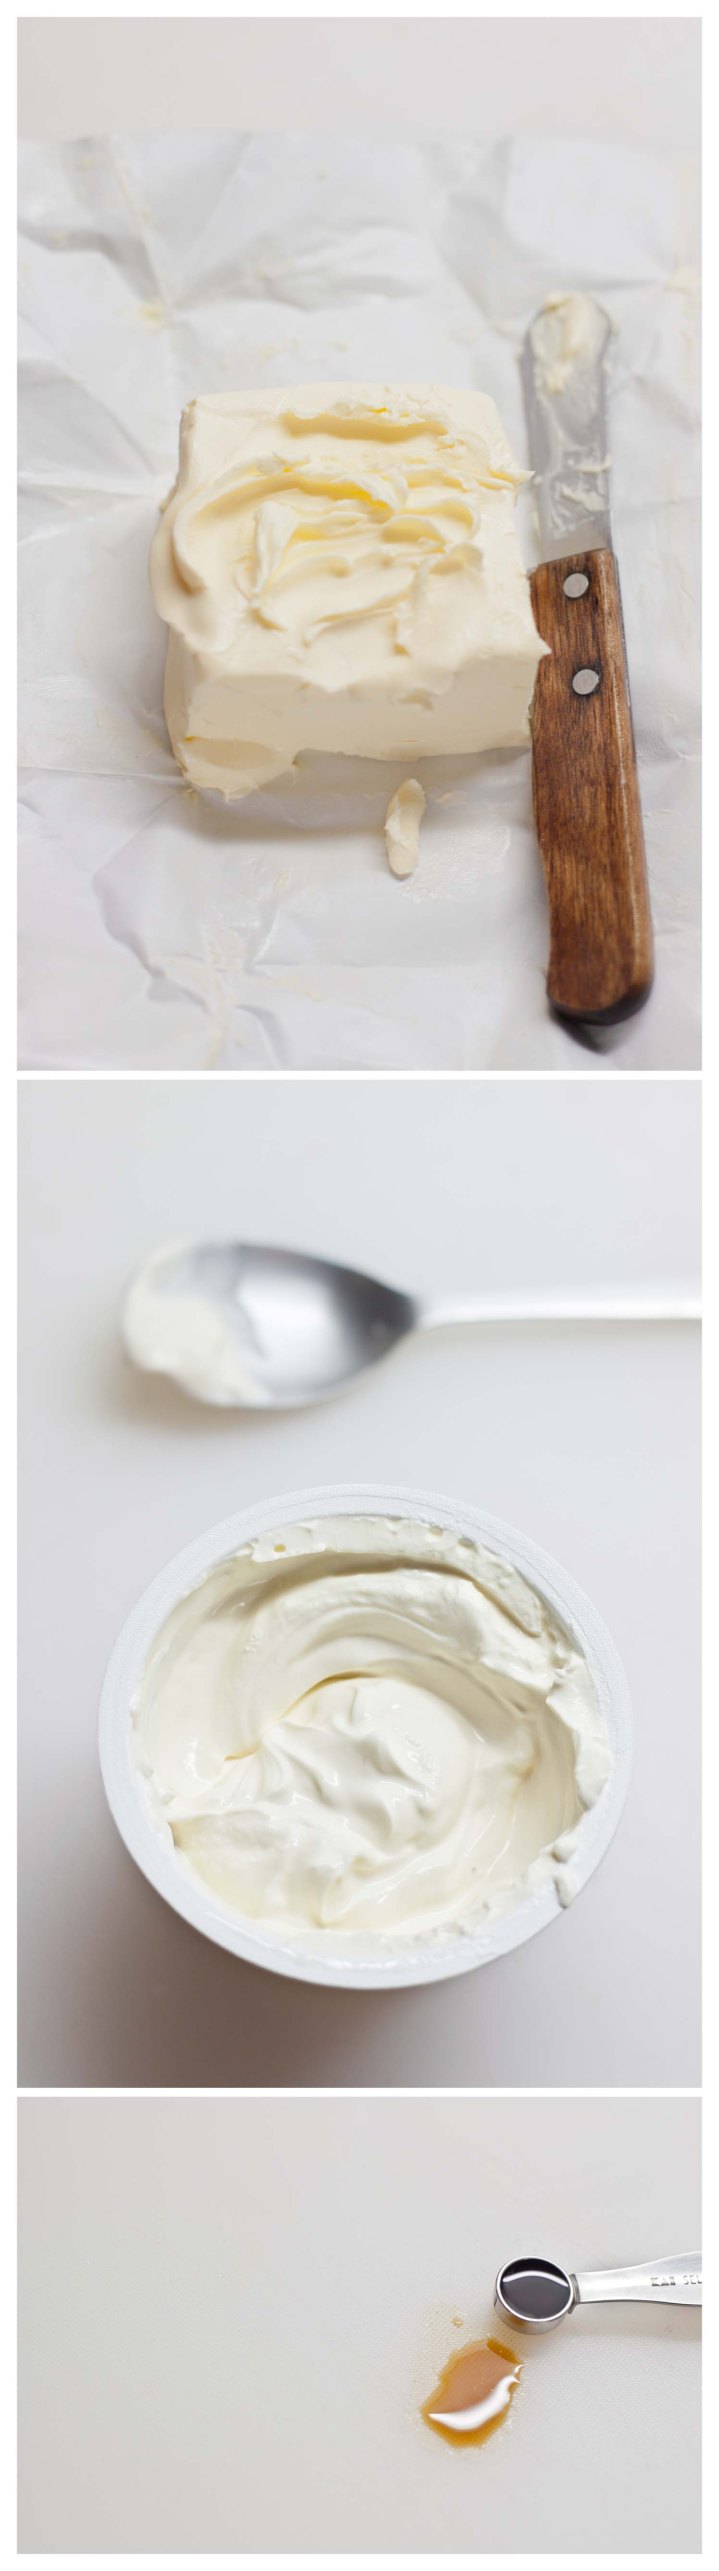 Mantequilla, crema fresca y aroma de vainilla